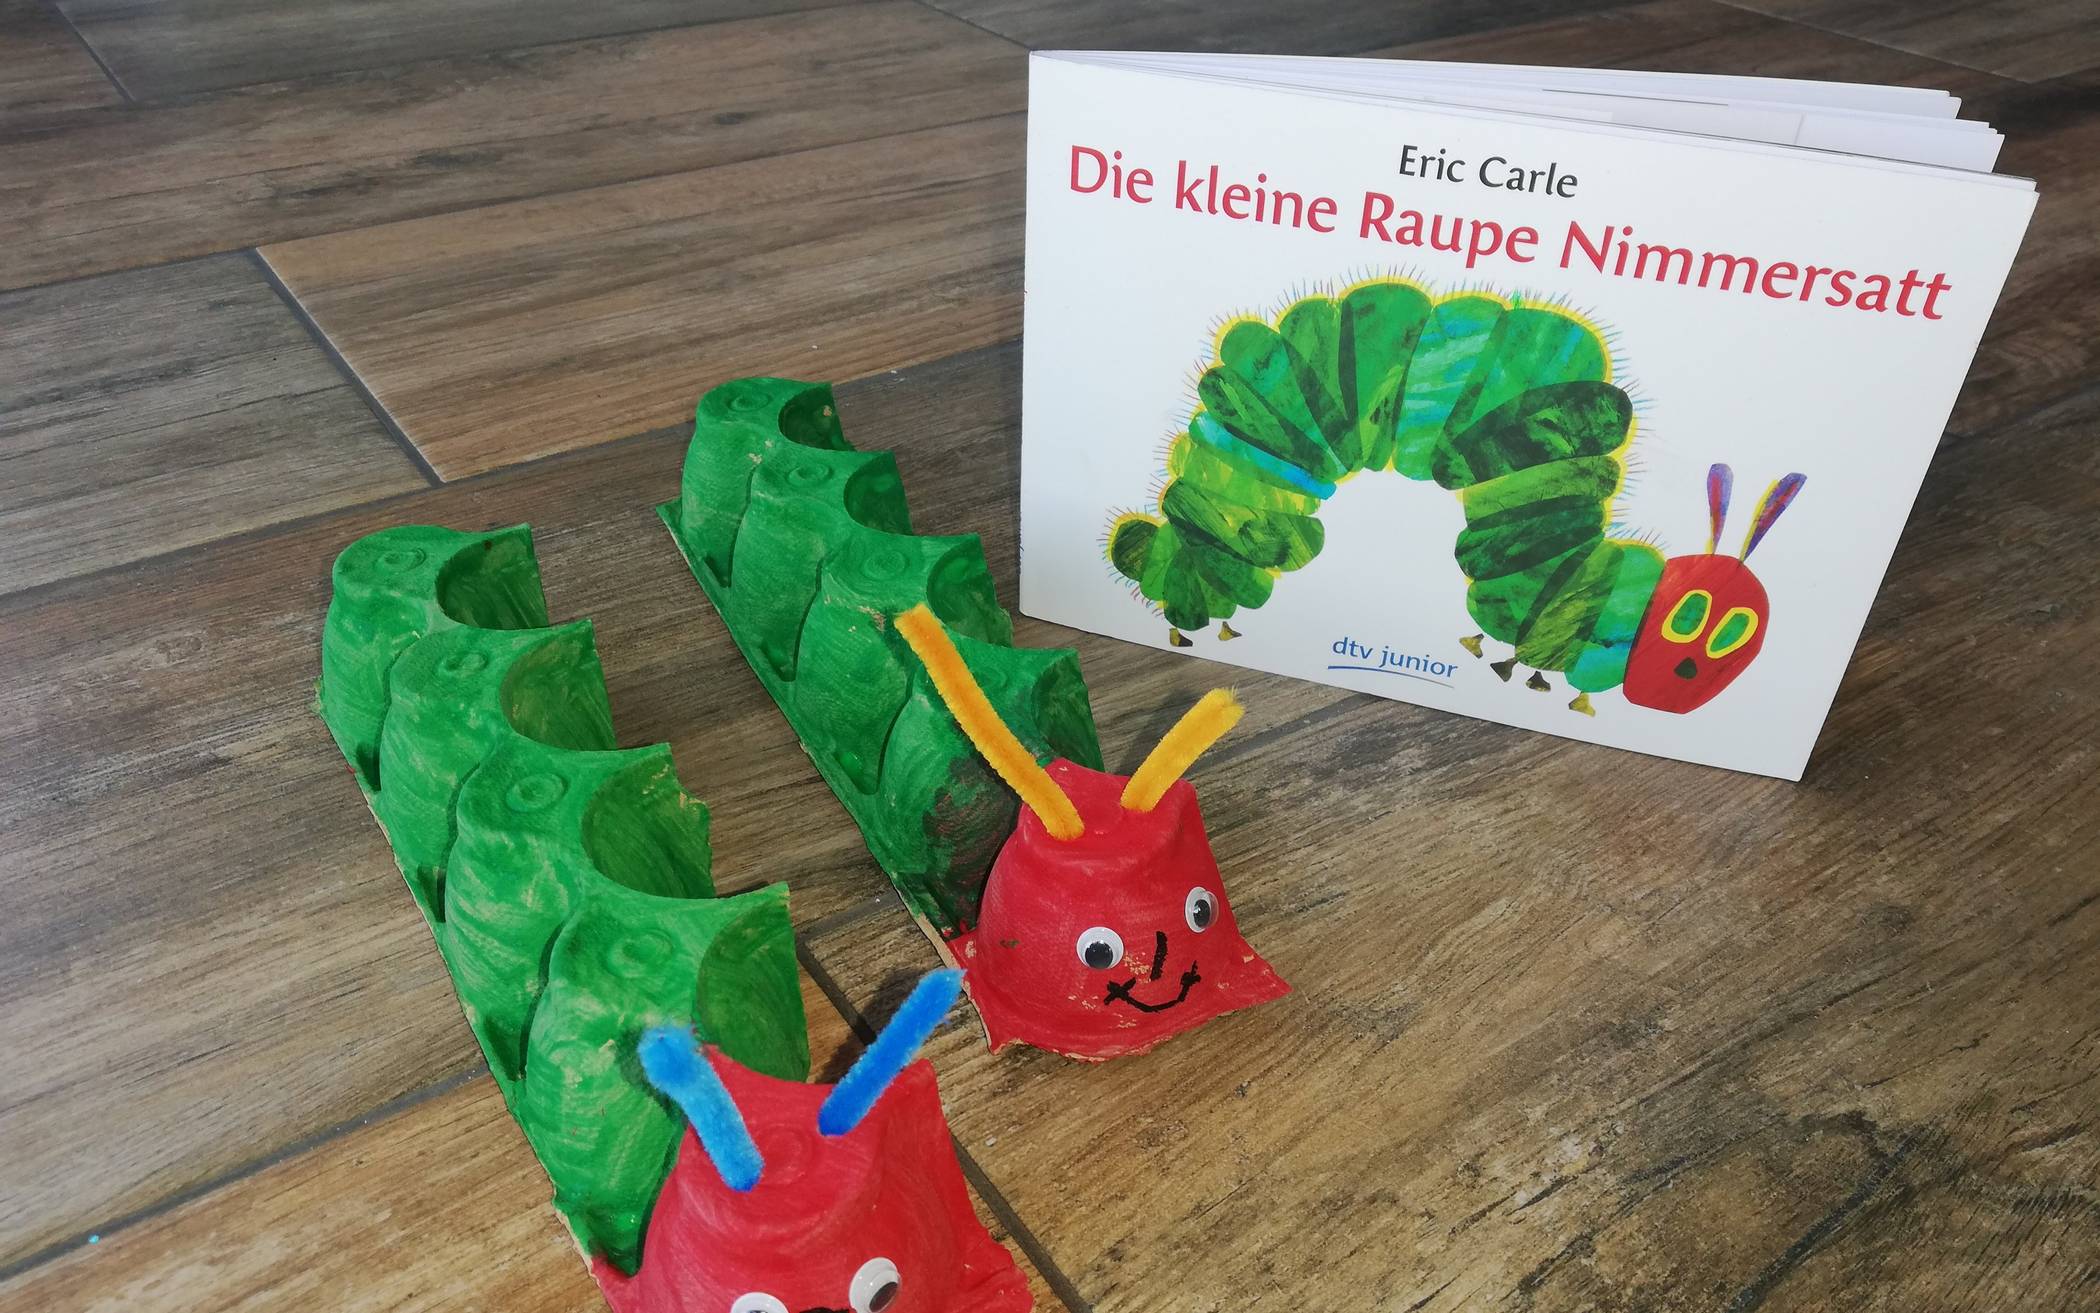  Tiotal süß: Die kleine Raupe Nimmersatt - gleich im Doppelpack. 